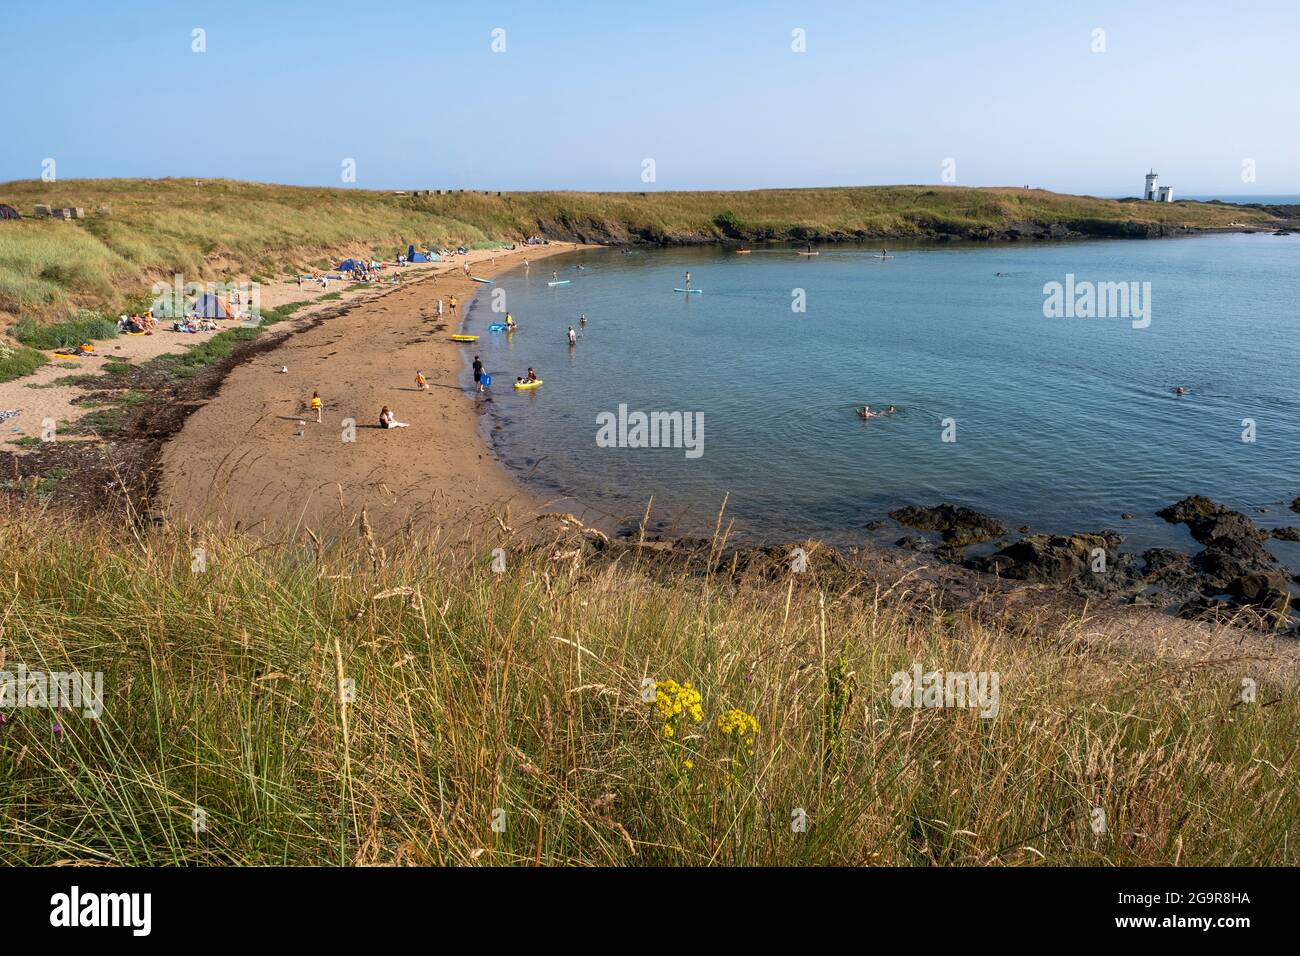 Los visitantes disfrutan de un buen tiempo en la playa Ruby Bay, Elie, East Neuk, Fife, Escocia. Foto de stock